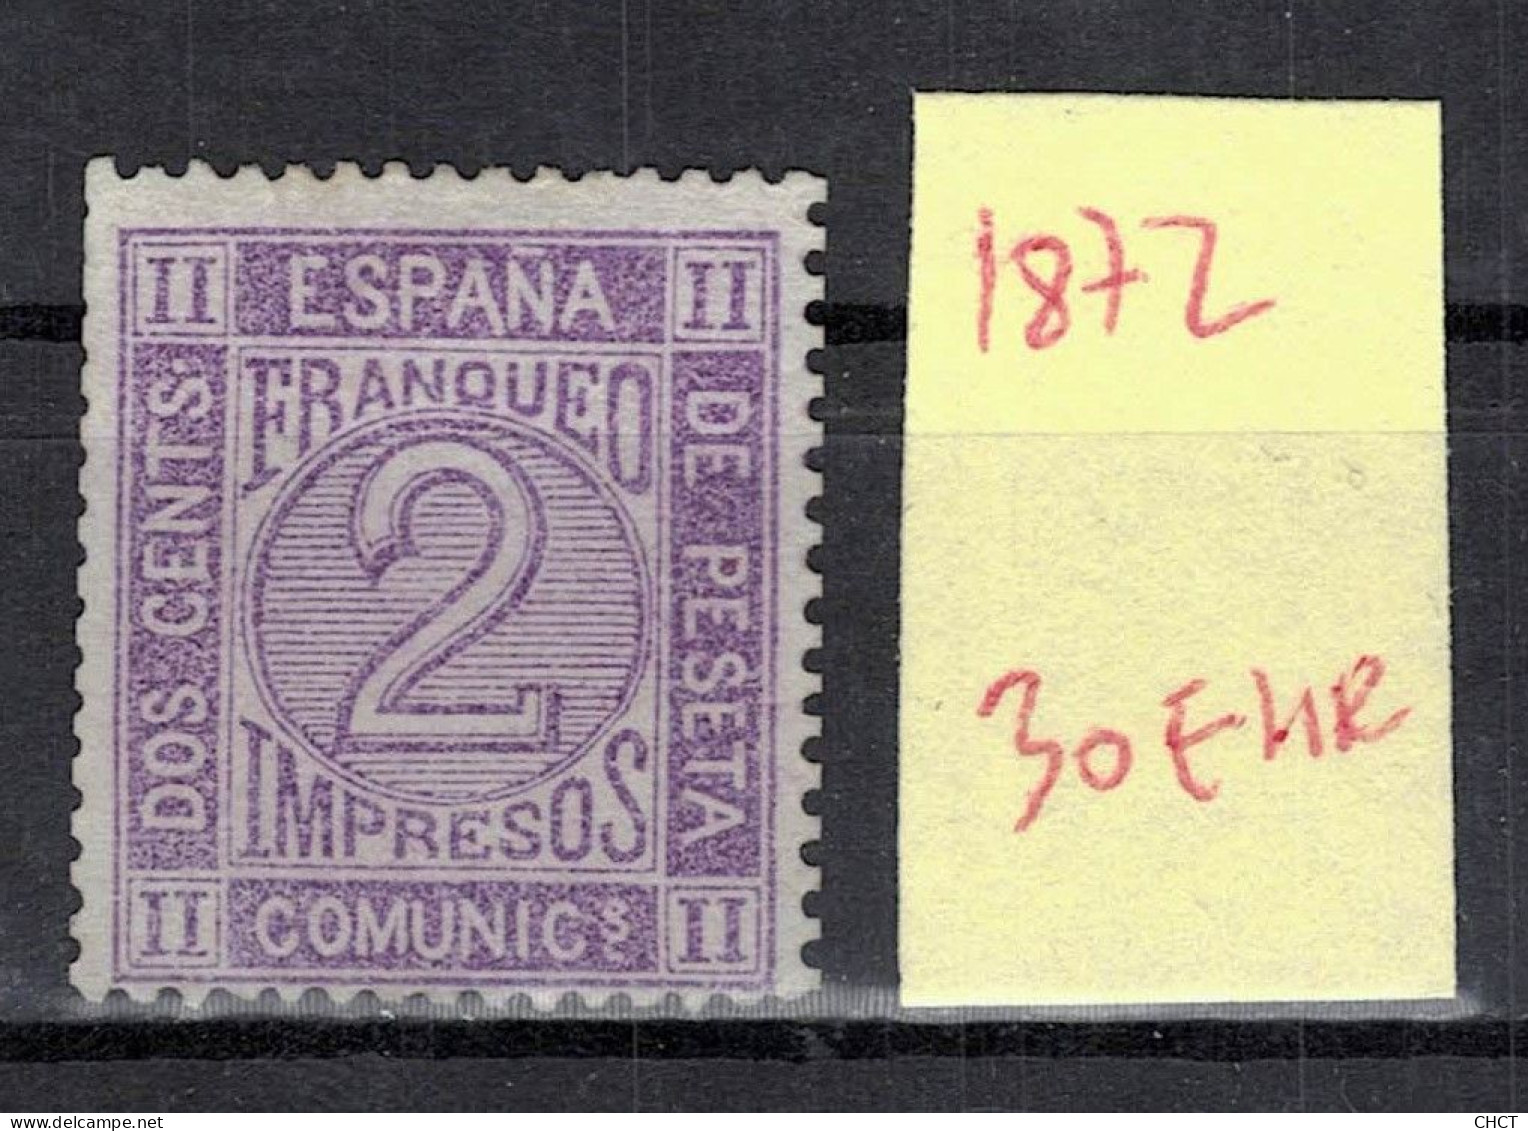 CHCT58 - Franqueo, 1872, MH, Spain - Neufs